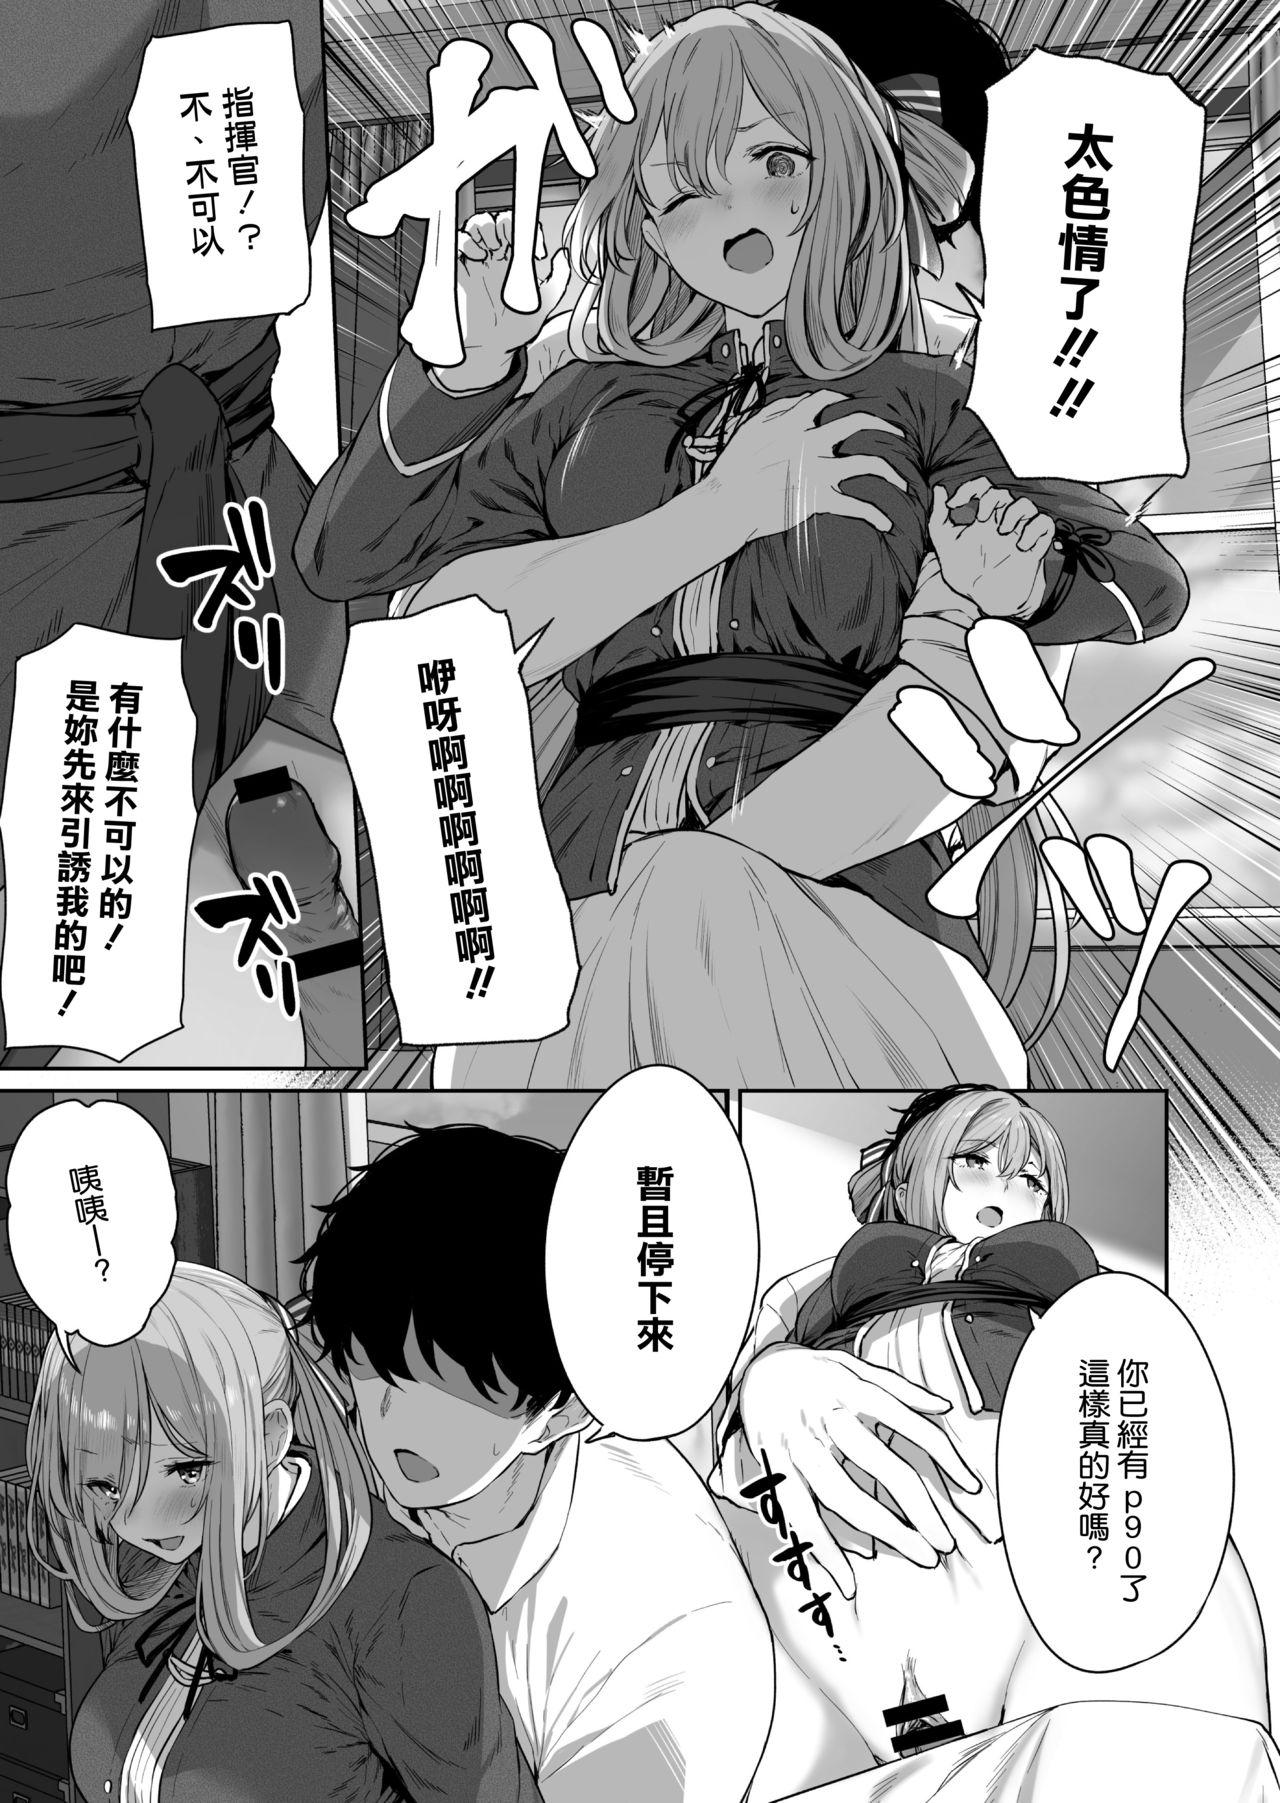 Massage Creep Yuiitsu Muni no Mono nan Dakara - Girls frontline Bigtits - Page 9